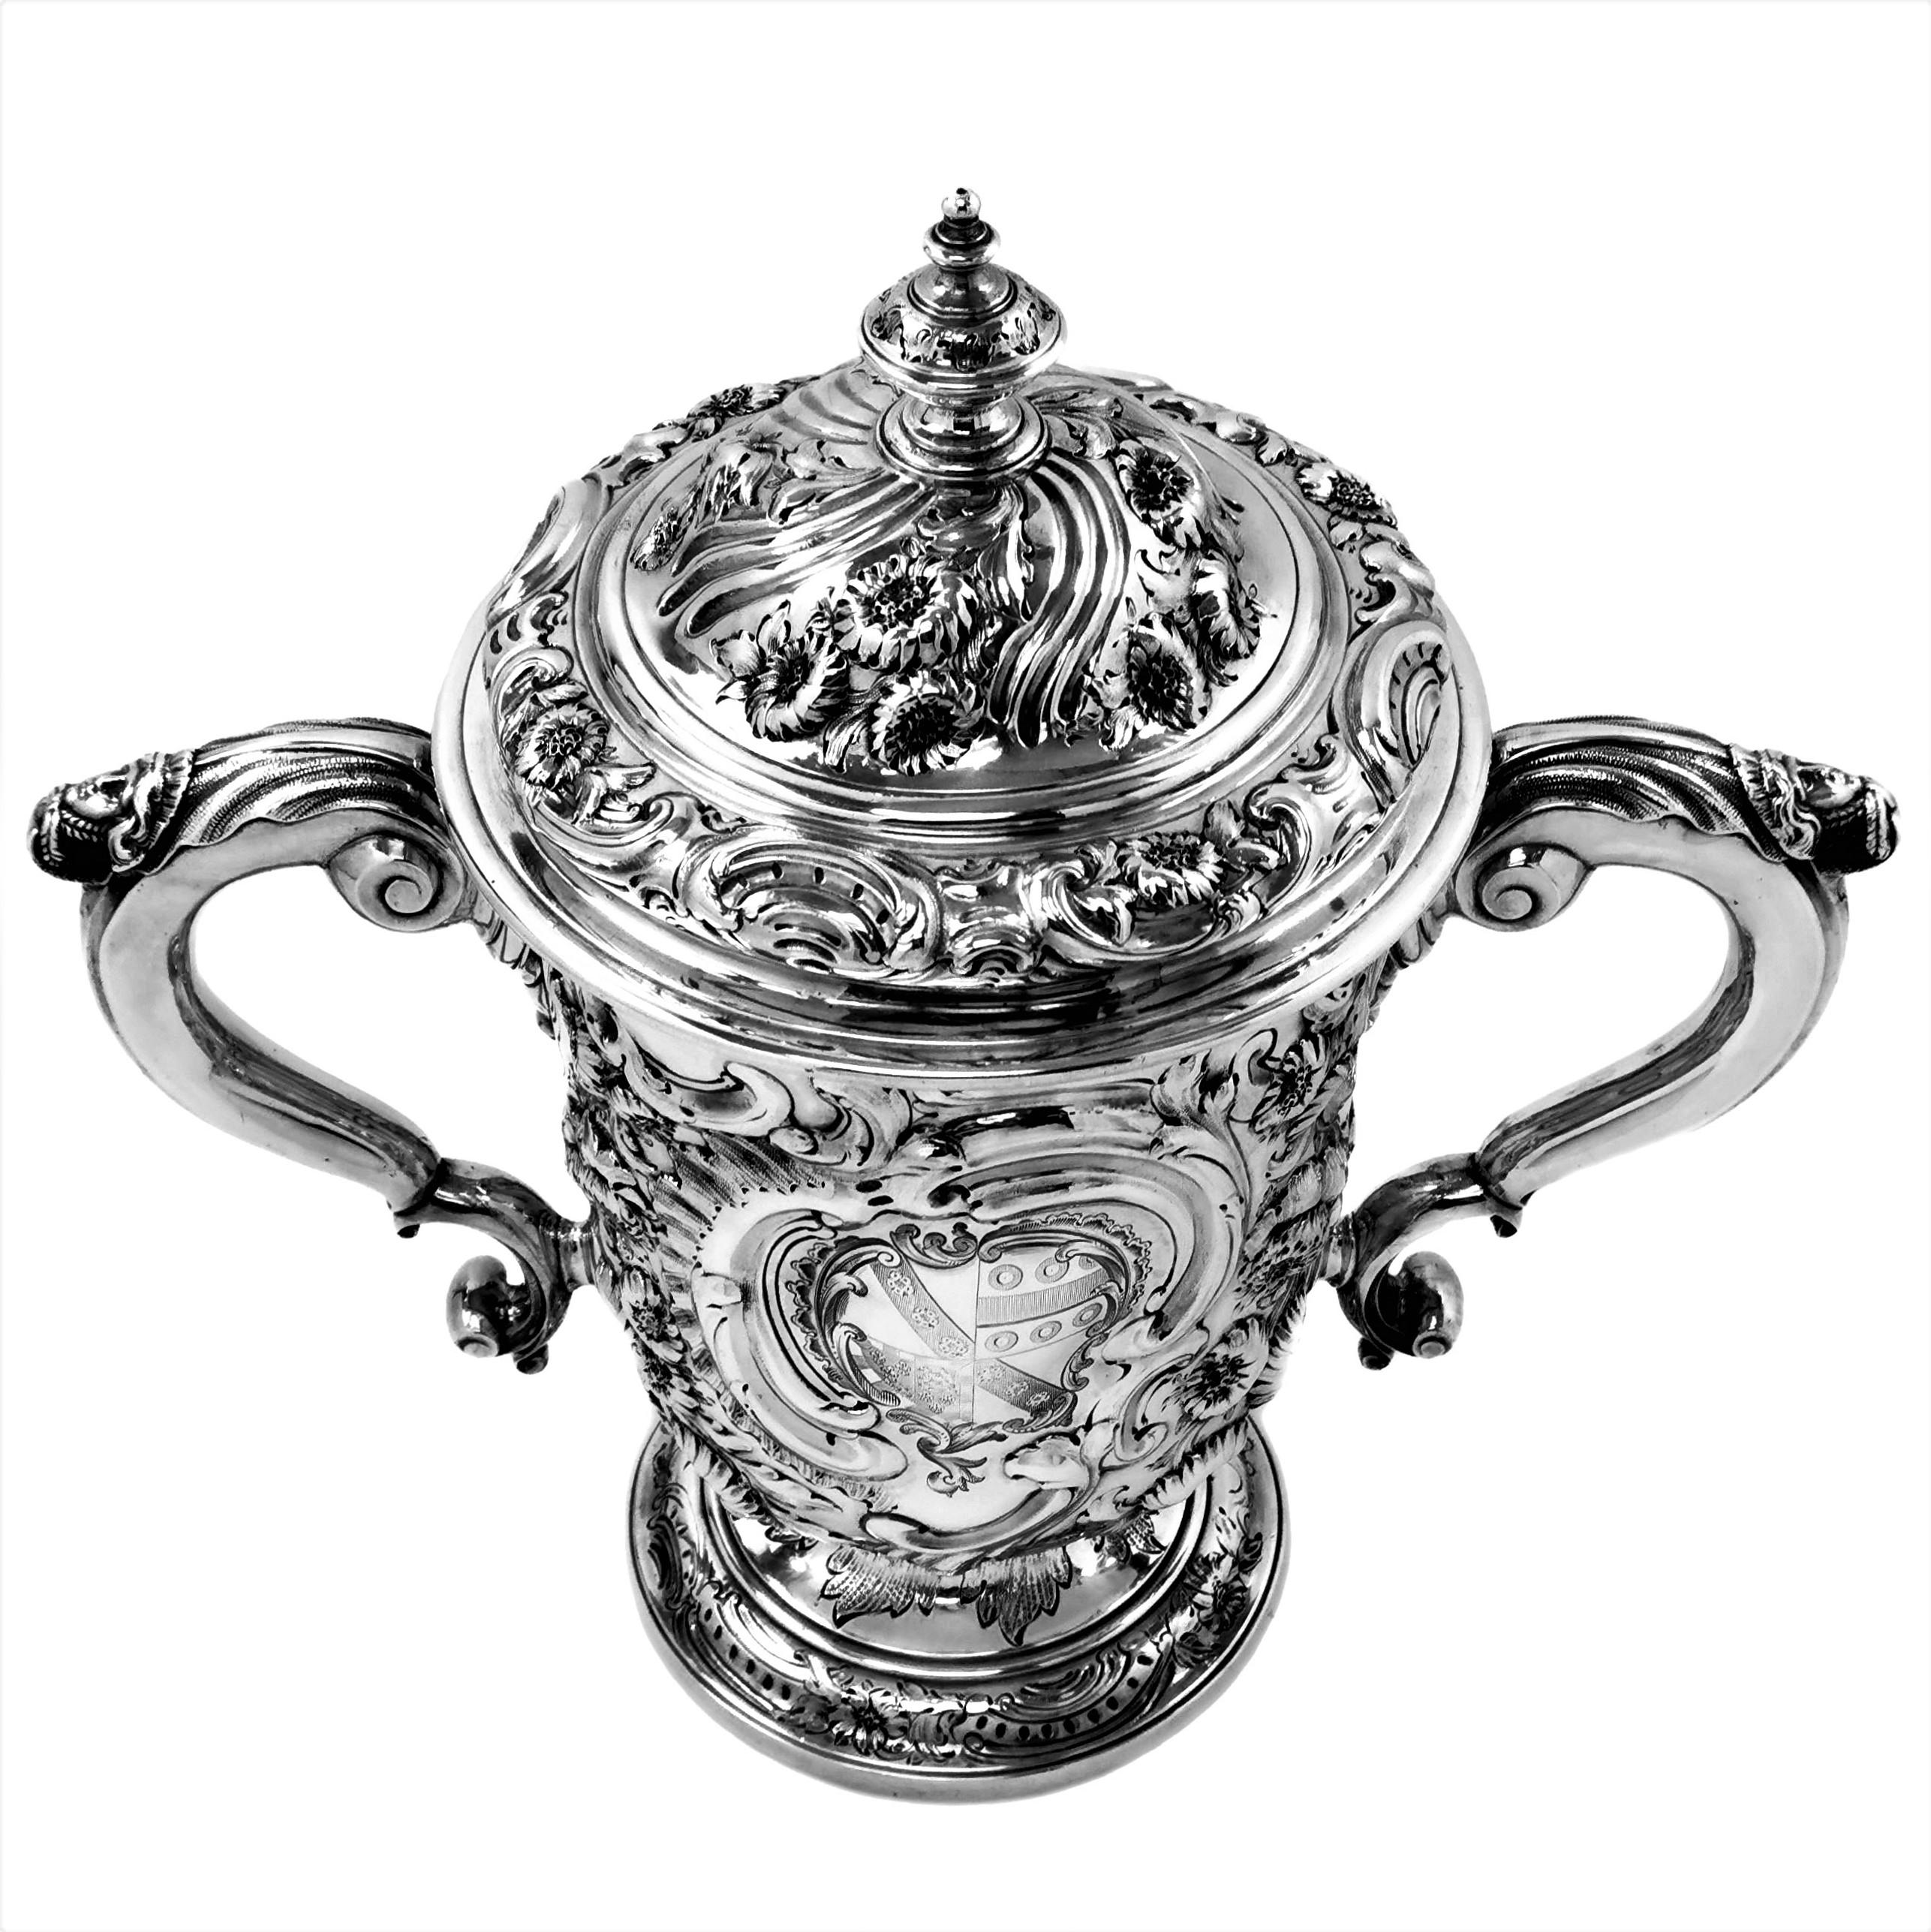 Eine schöne antike georgianischen massivem Silber Deckel Tasse in kunstvollen floralen ziselierten Designs bedeckt. Die Trophäe hat auf der einen Seite eine geformte Kartusche mit einem eingravierten Wappen. Der Becher hat einen Deckel mit passenden